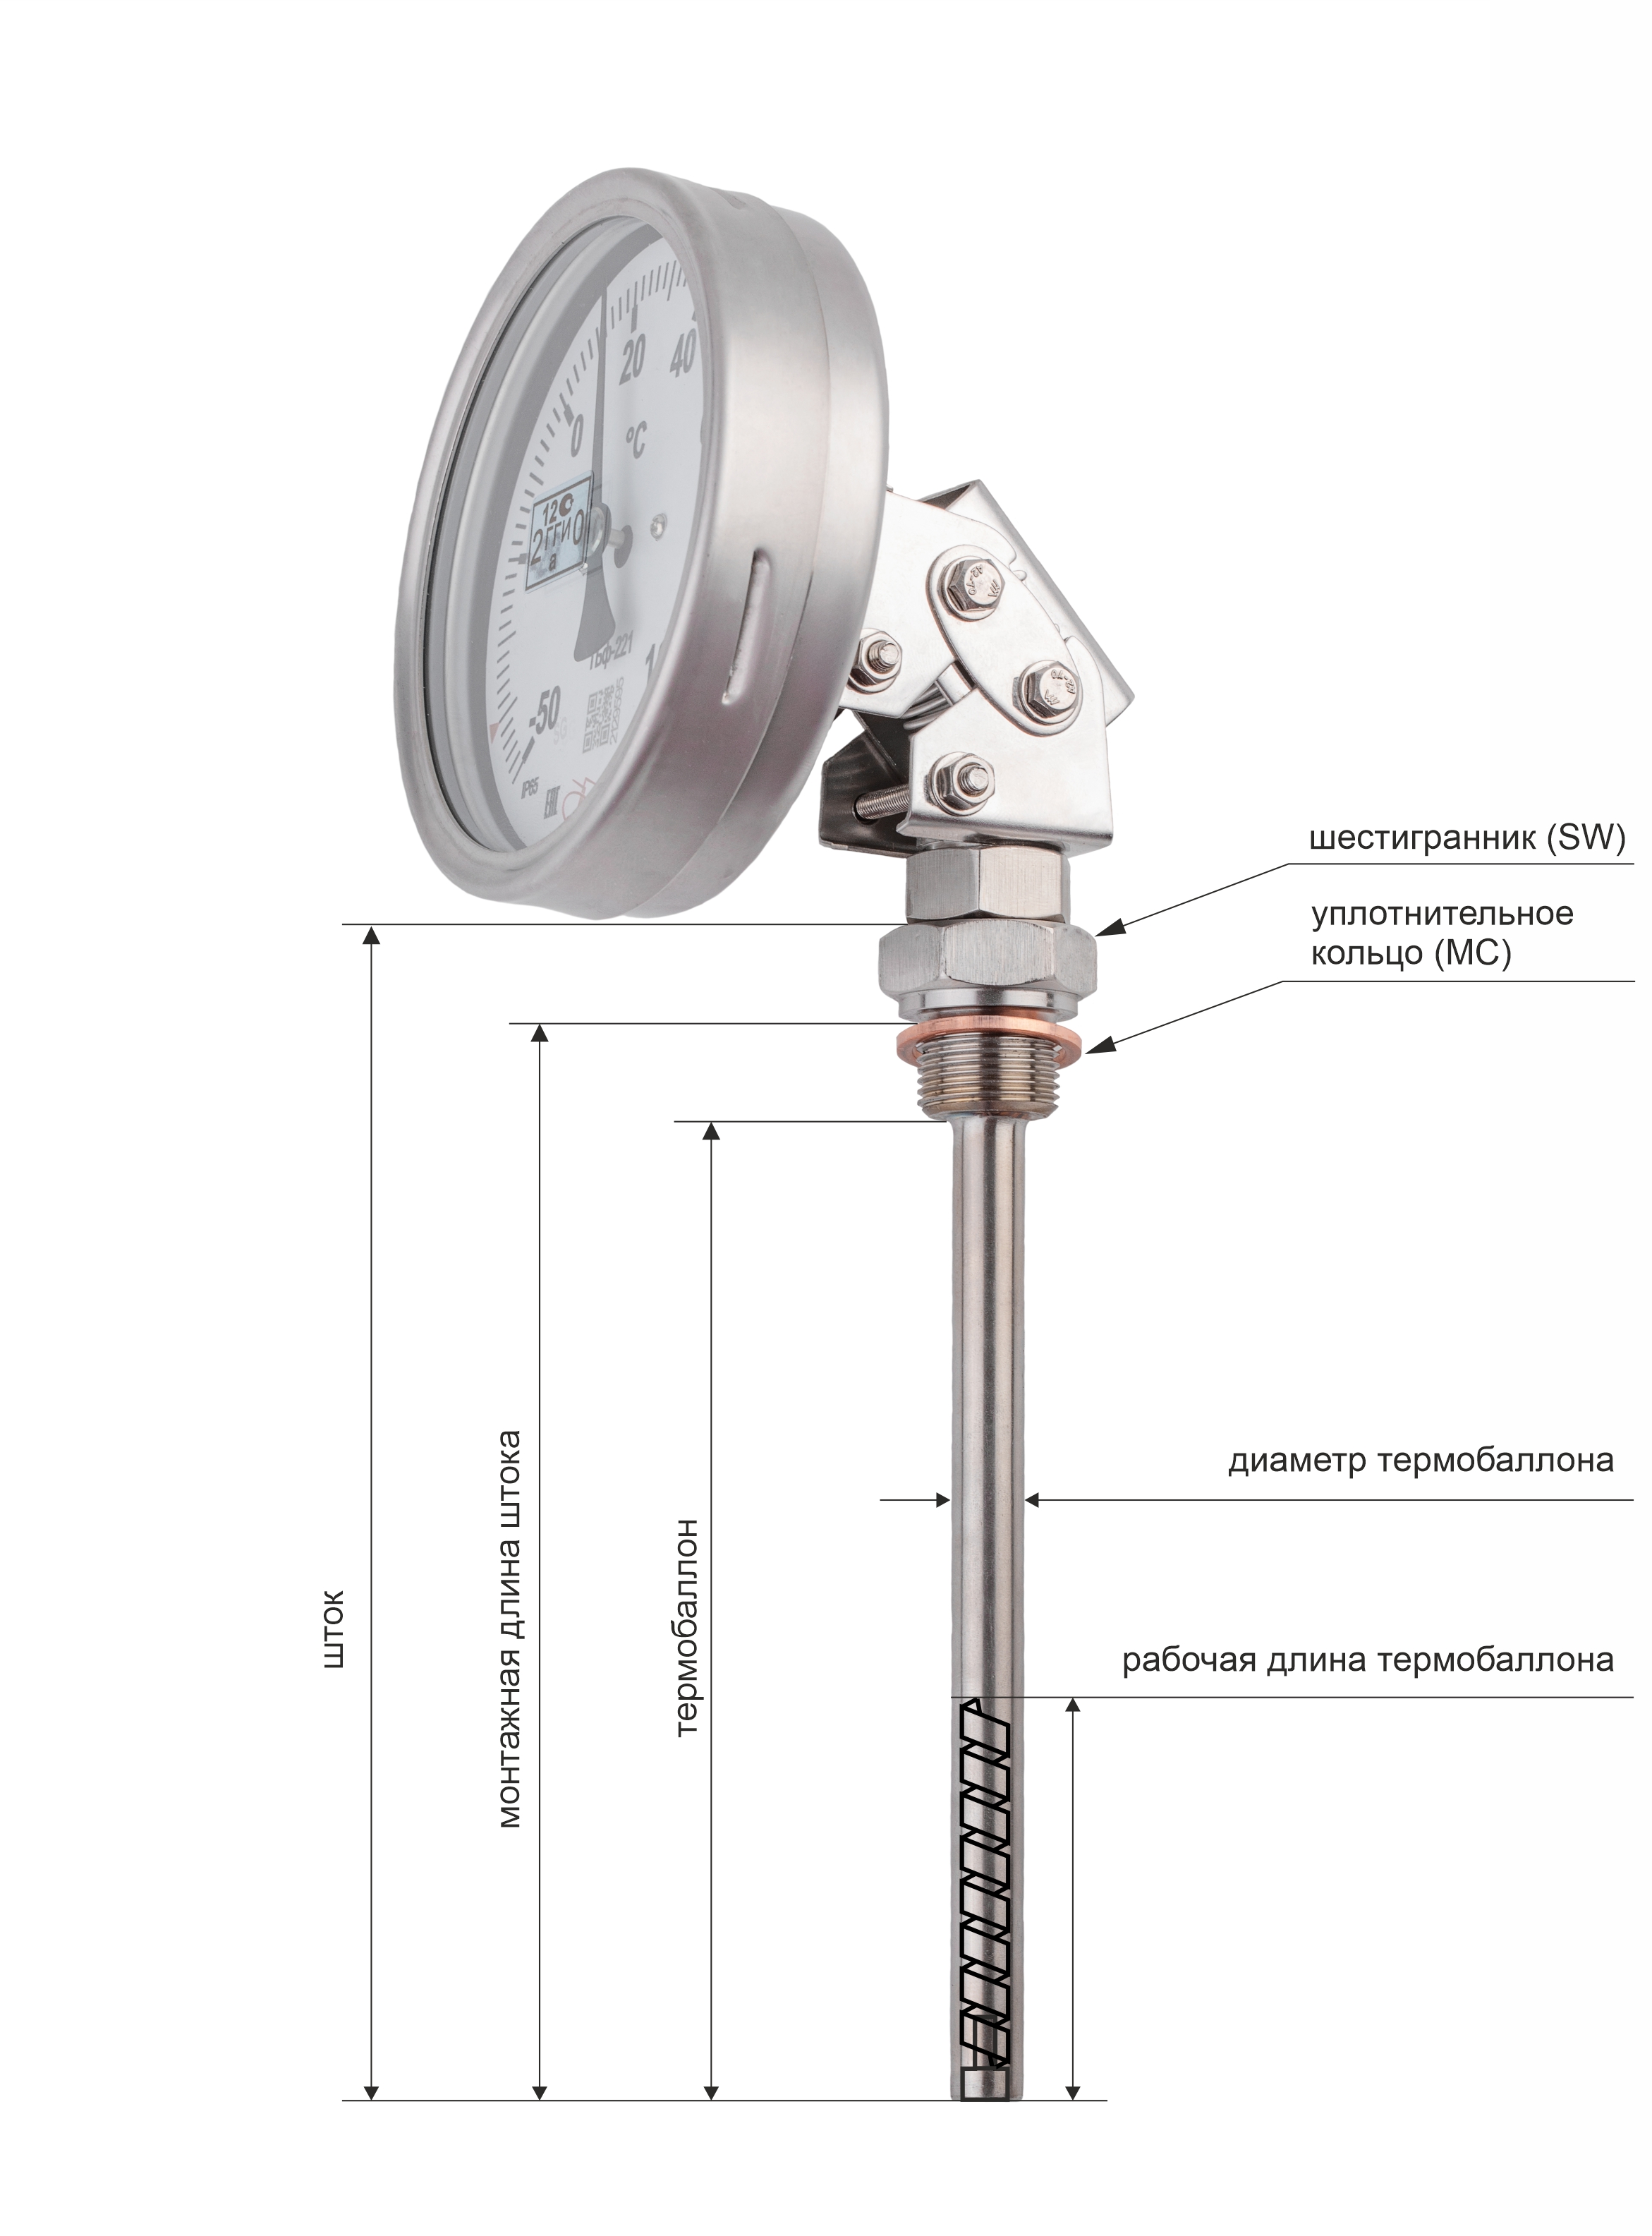 Термометры биметаллические коррозионностойкие ТБф-226 с возможностью гидрозаполнения (Диаметр: 80 мм, 100 мм, 160 мм)